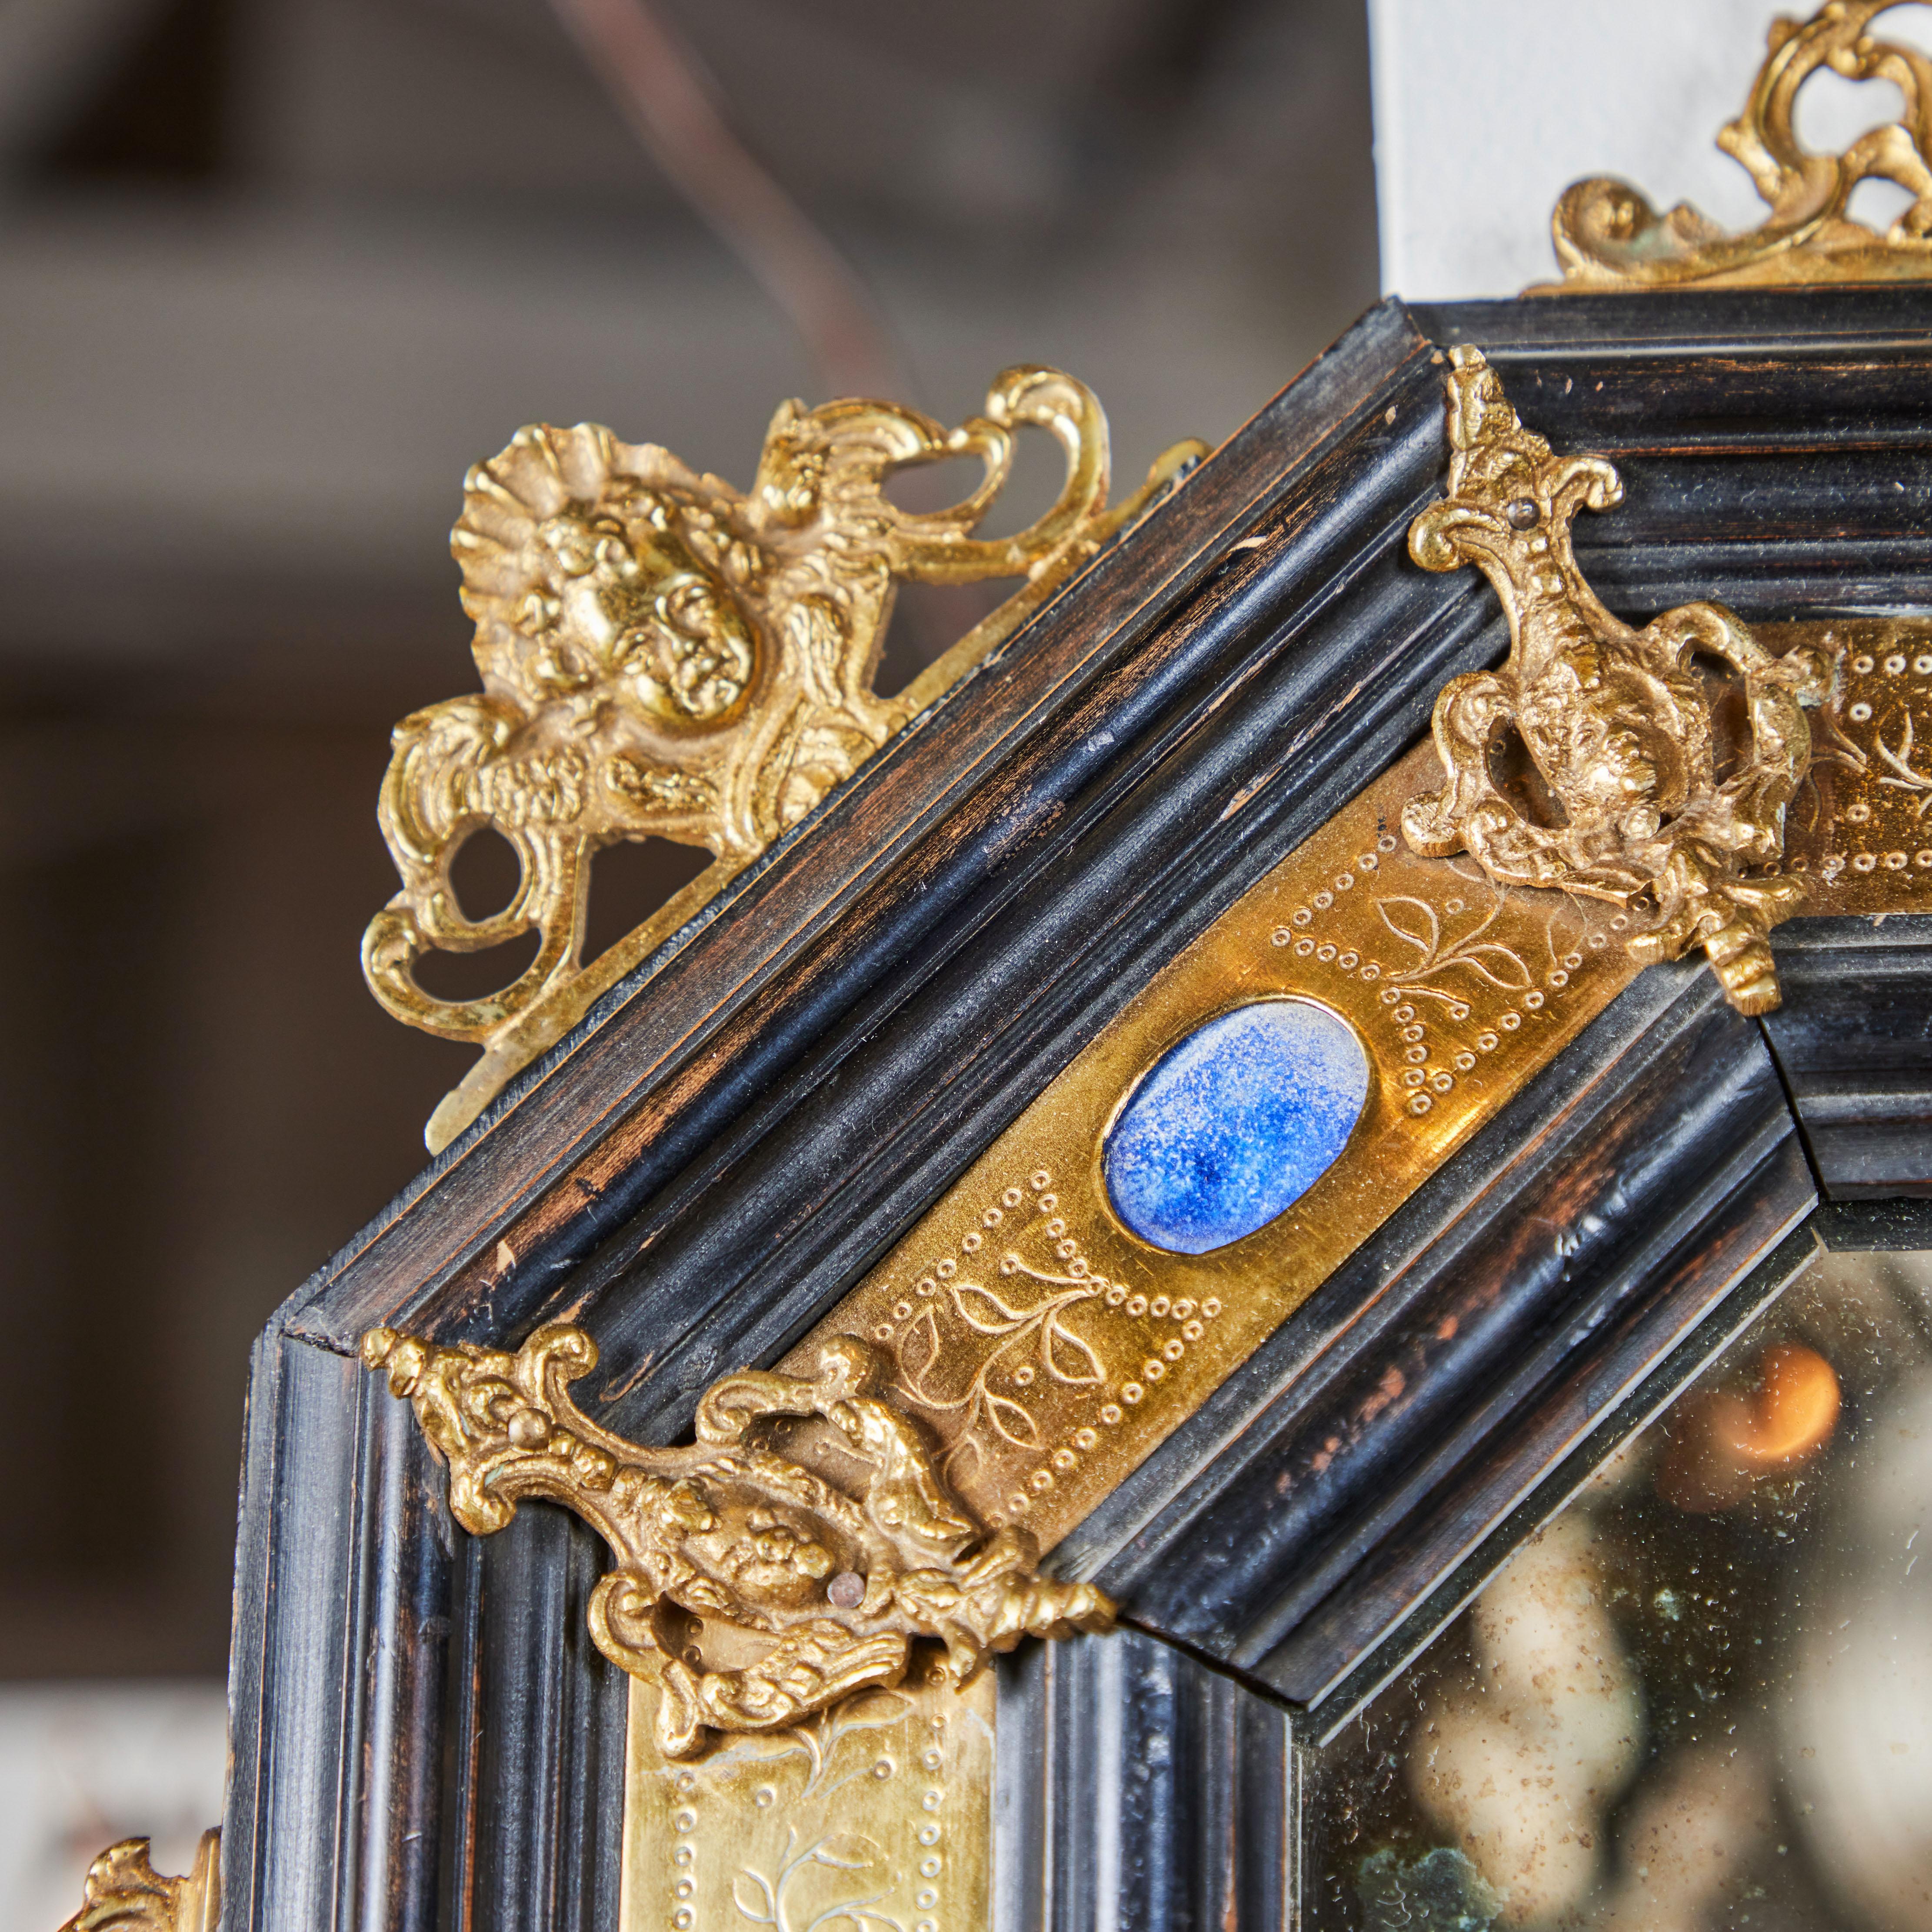 Paire de miroirs octogonaux de style Renaissance, en bois ébonisé, laiton gravé et bronze doré, sertis de pierres semi-précieuses plaquées. Les visages des chérubins sont ornés de détails en bronze doré. Le miroir d'origine est marbré en fonction de